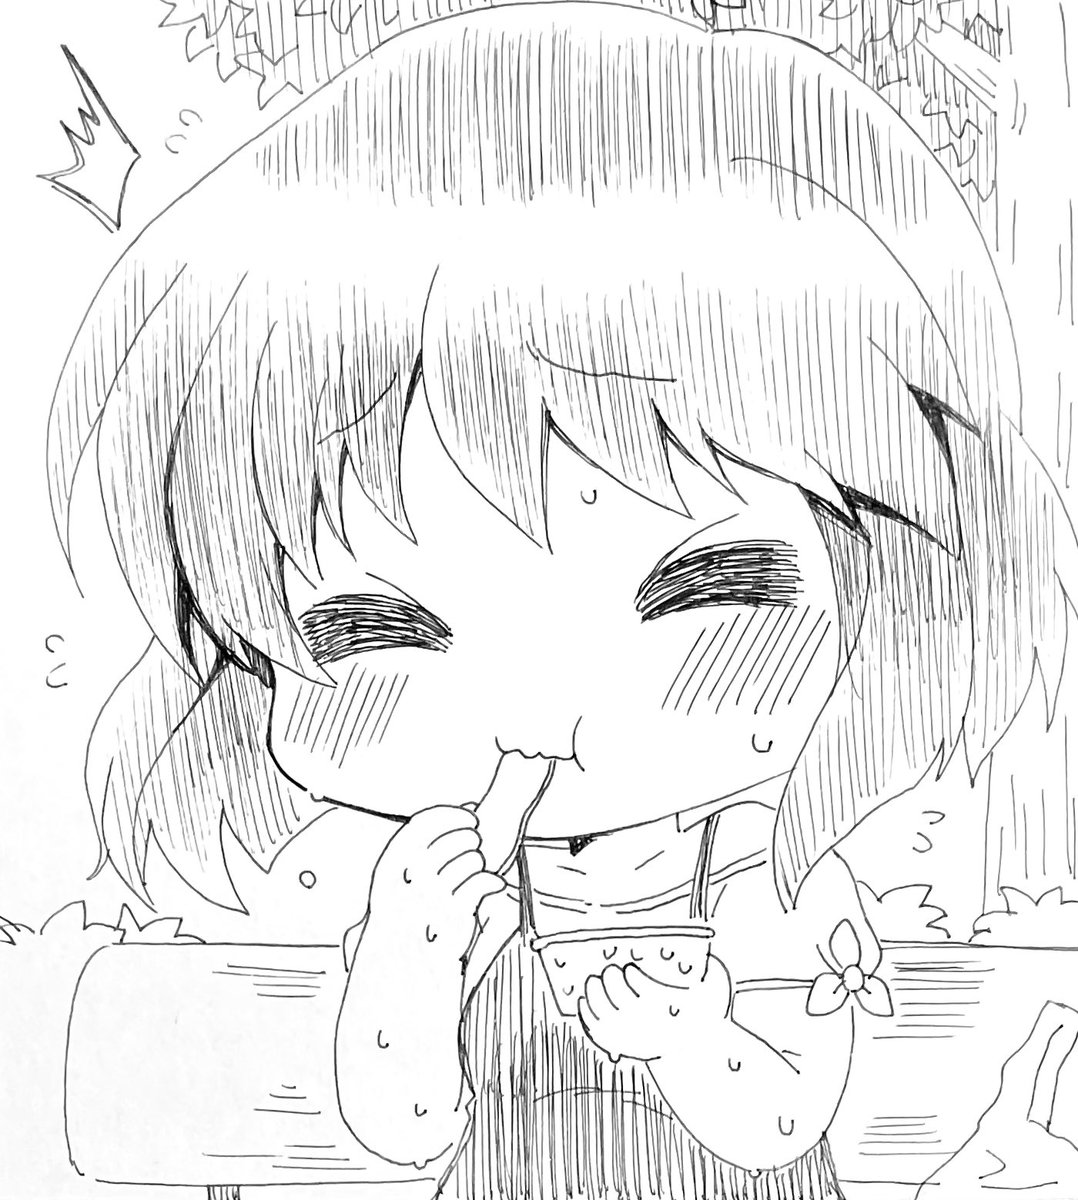 今日のアナログイラスト251日目は自宅まで辿り着けず炎天下のベンチでカップアイスを食べるKanonの美坂栞です。 